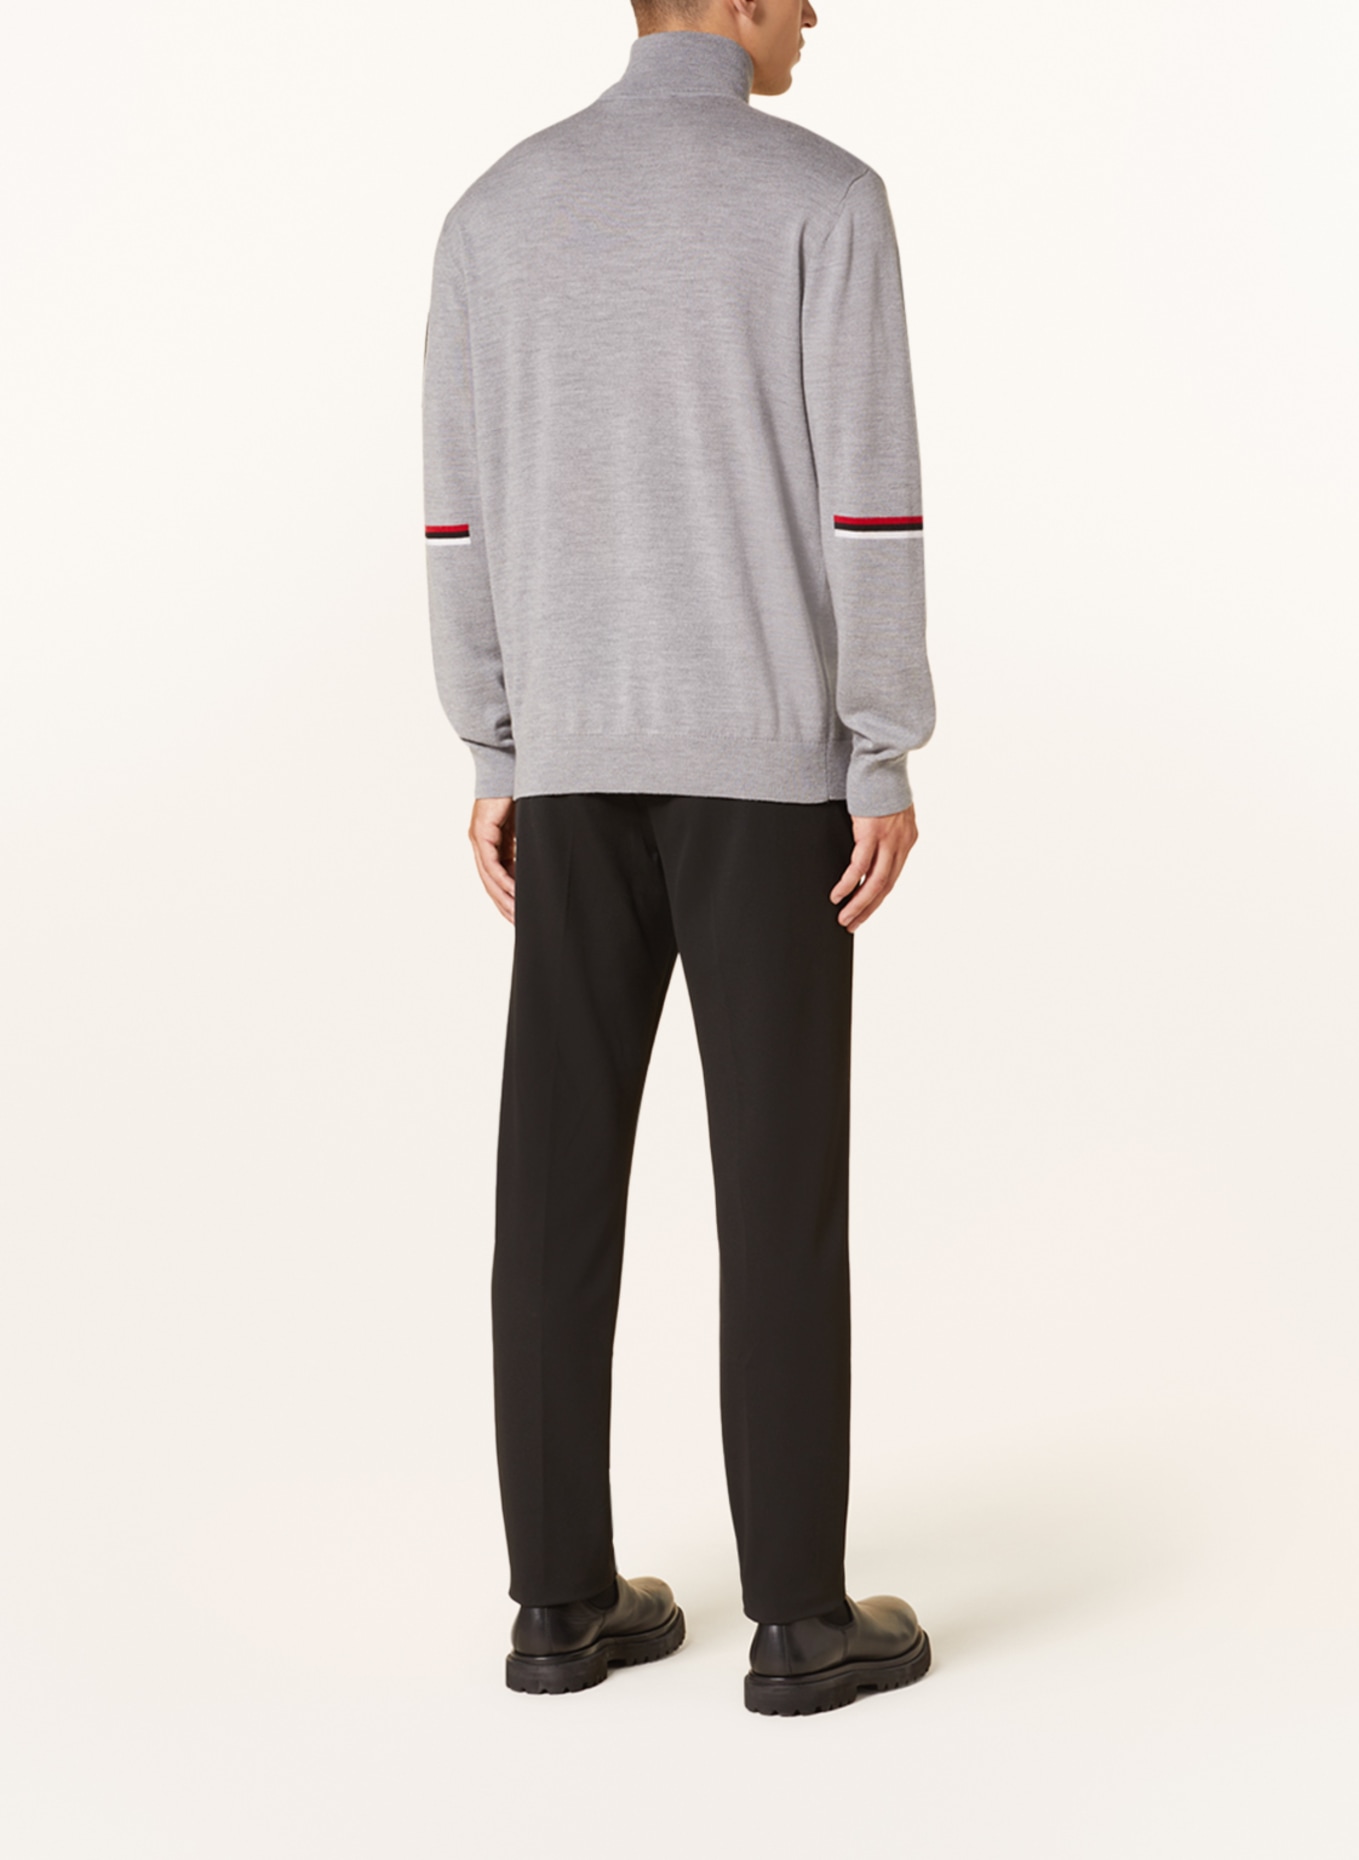 toni sailer Half-zip sweater MAGNUS in merino wool, Color: GRAY (Image 3)